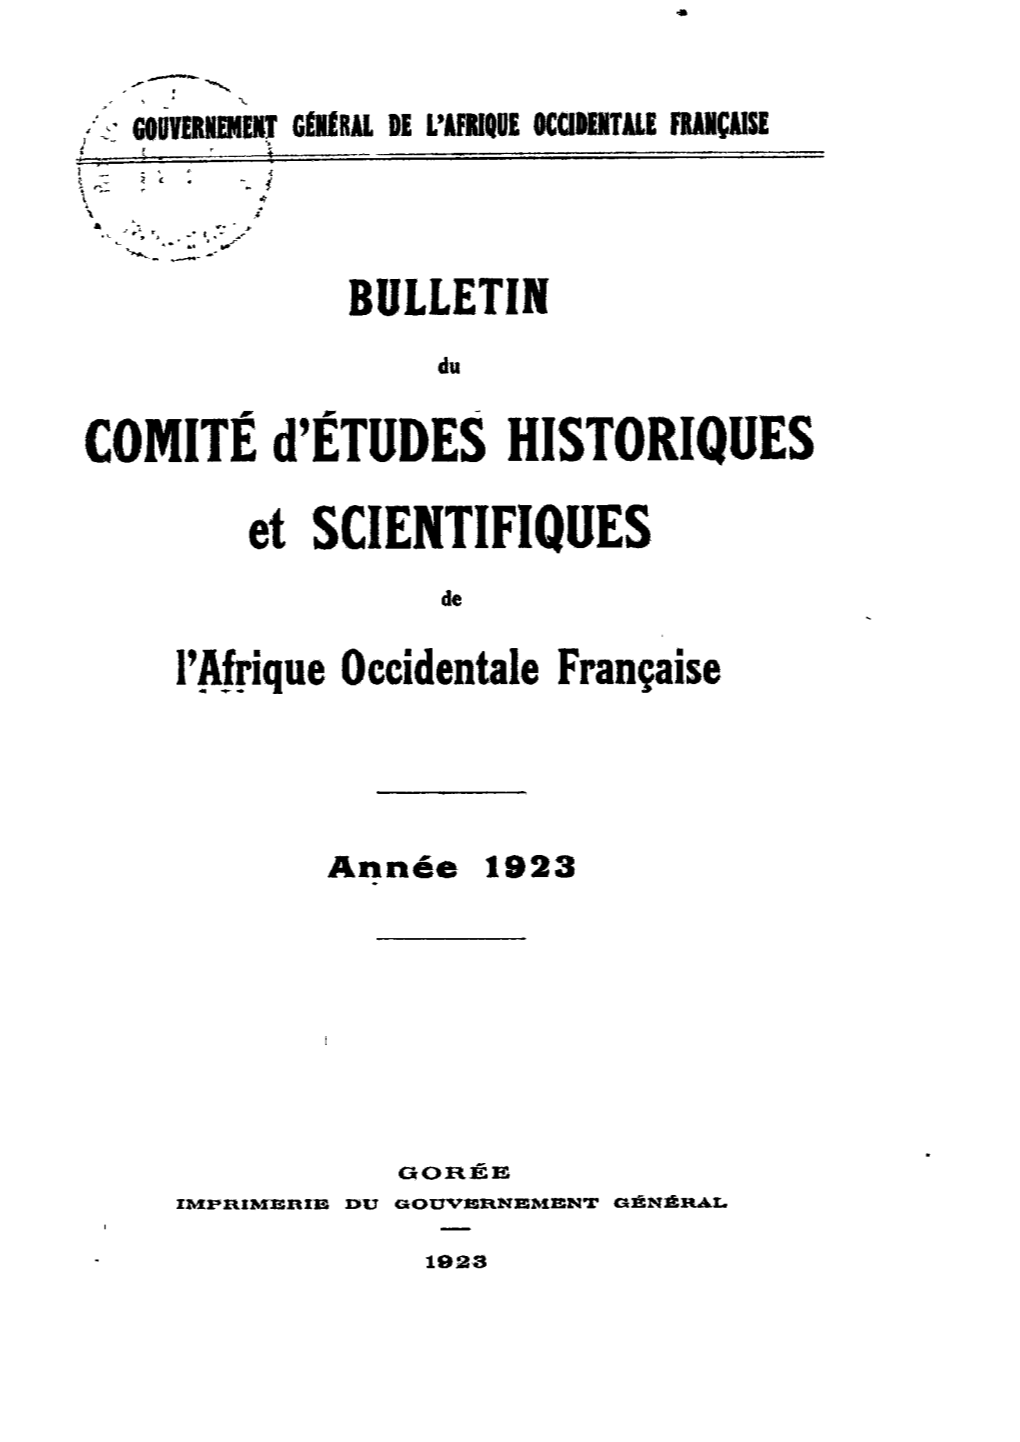 Comitéd'études HISTORIQUES Et SCIENTIFIQUES